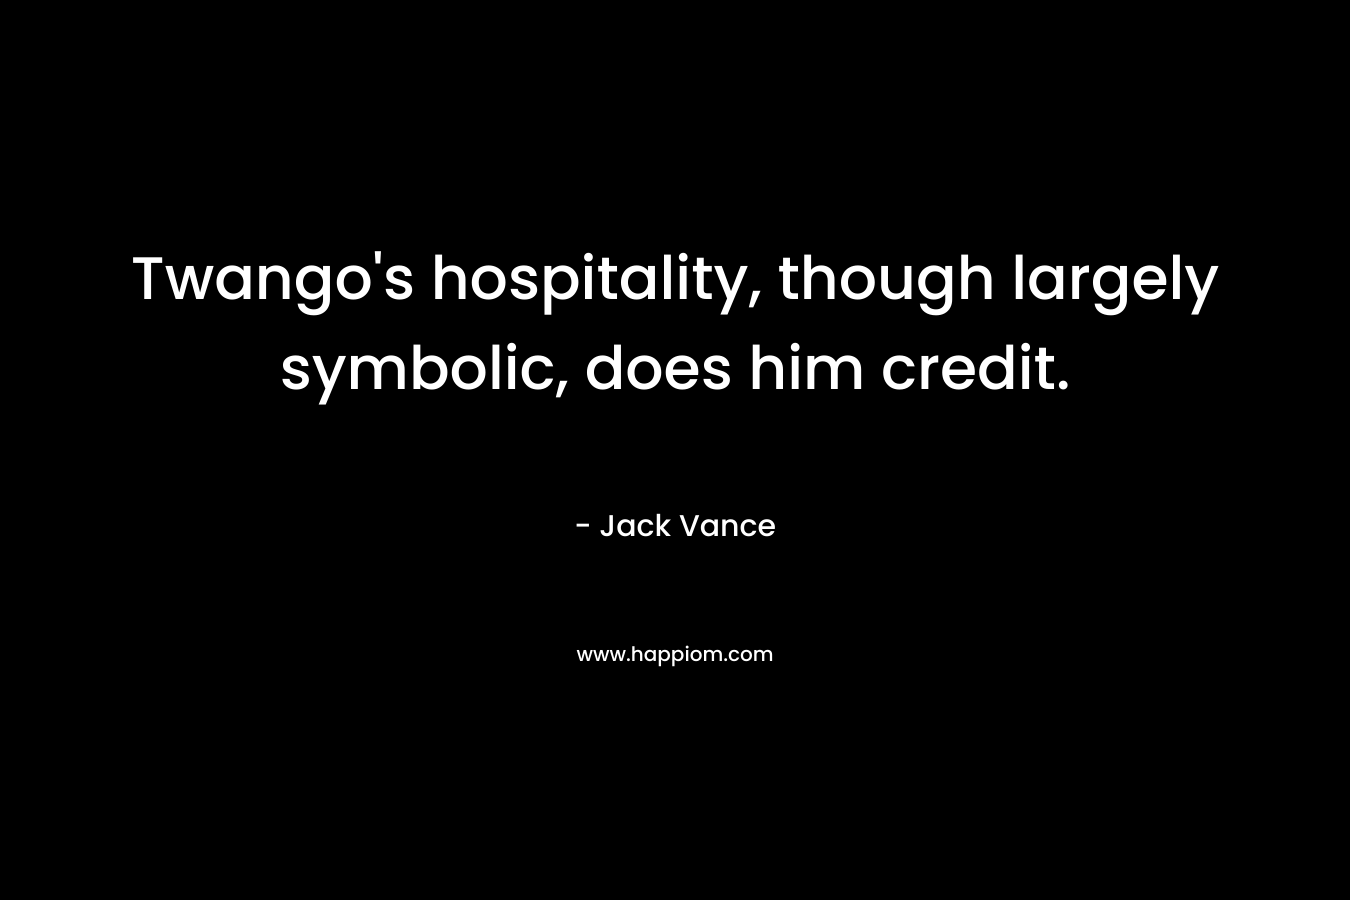 Twango's hospitality, though largely symbolic, does him credit.